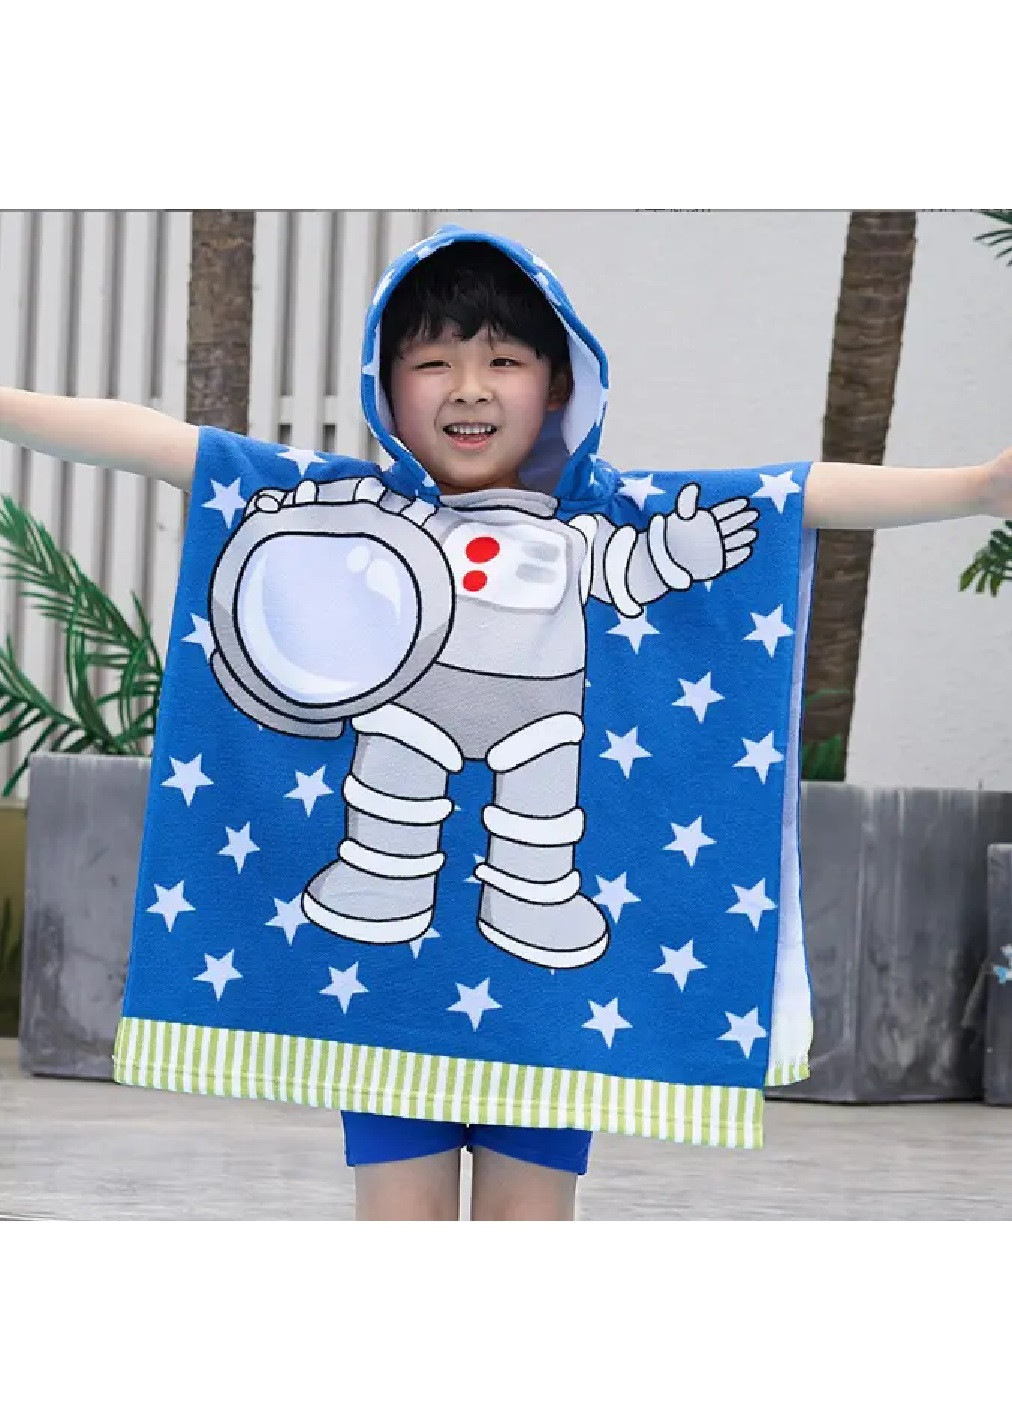 Unbranded дитячий пляжний рушник пончо з капюшоном мікрофібра для ванної басейну пляжу 60х60 см (474682-prob) зірки малюнок блакитний виробництво -